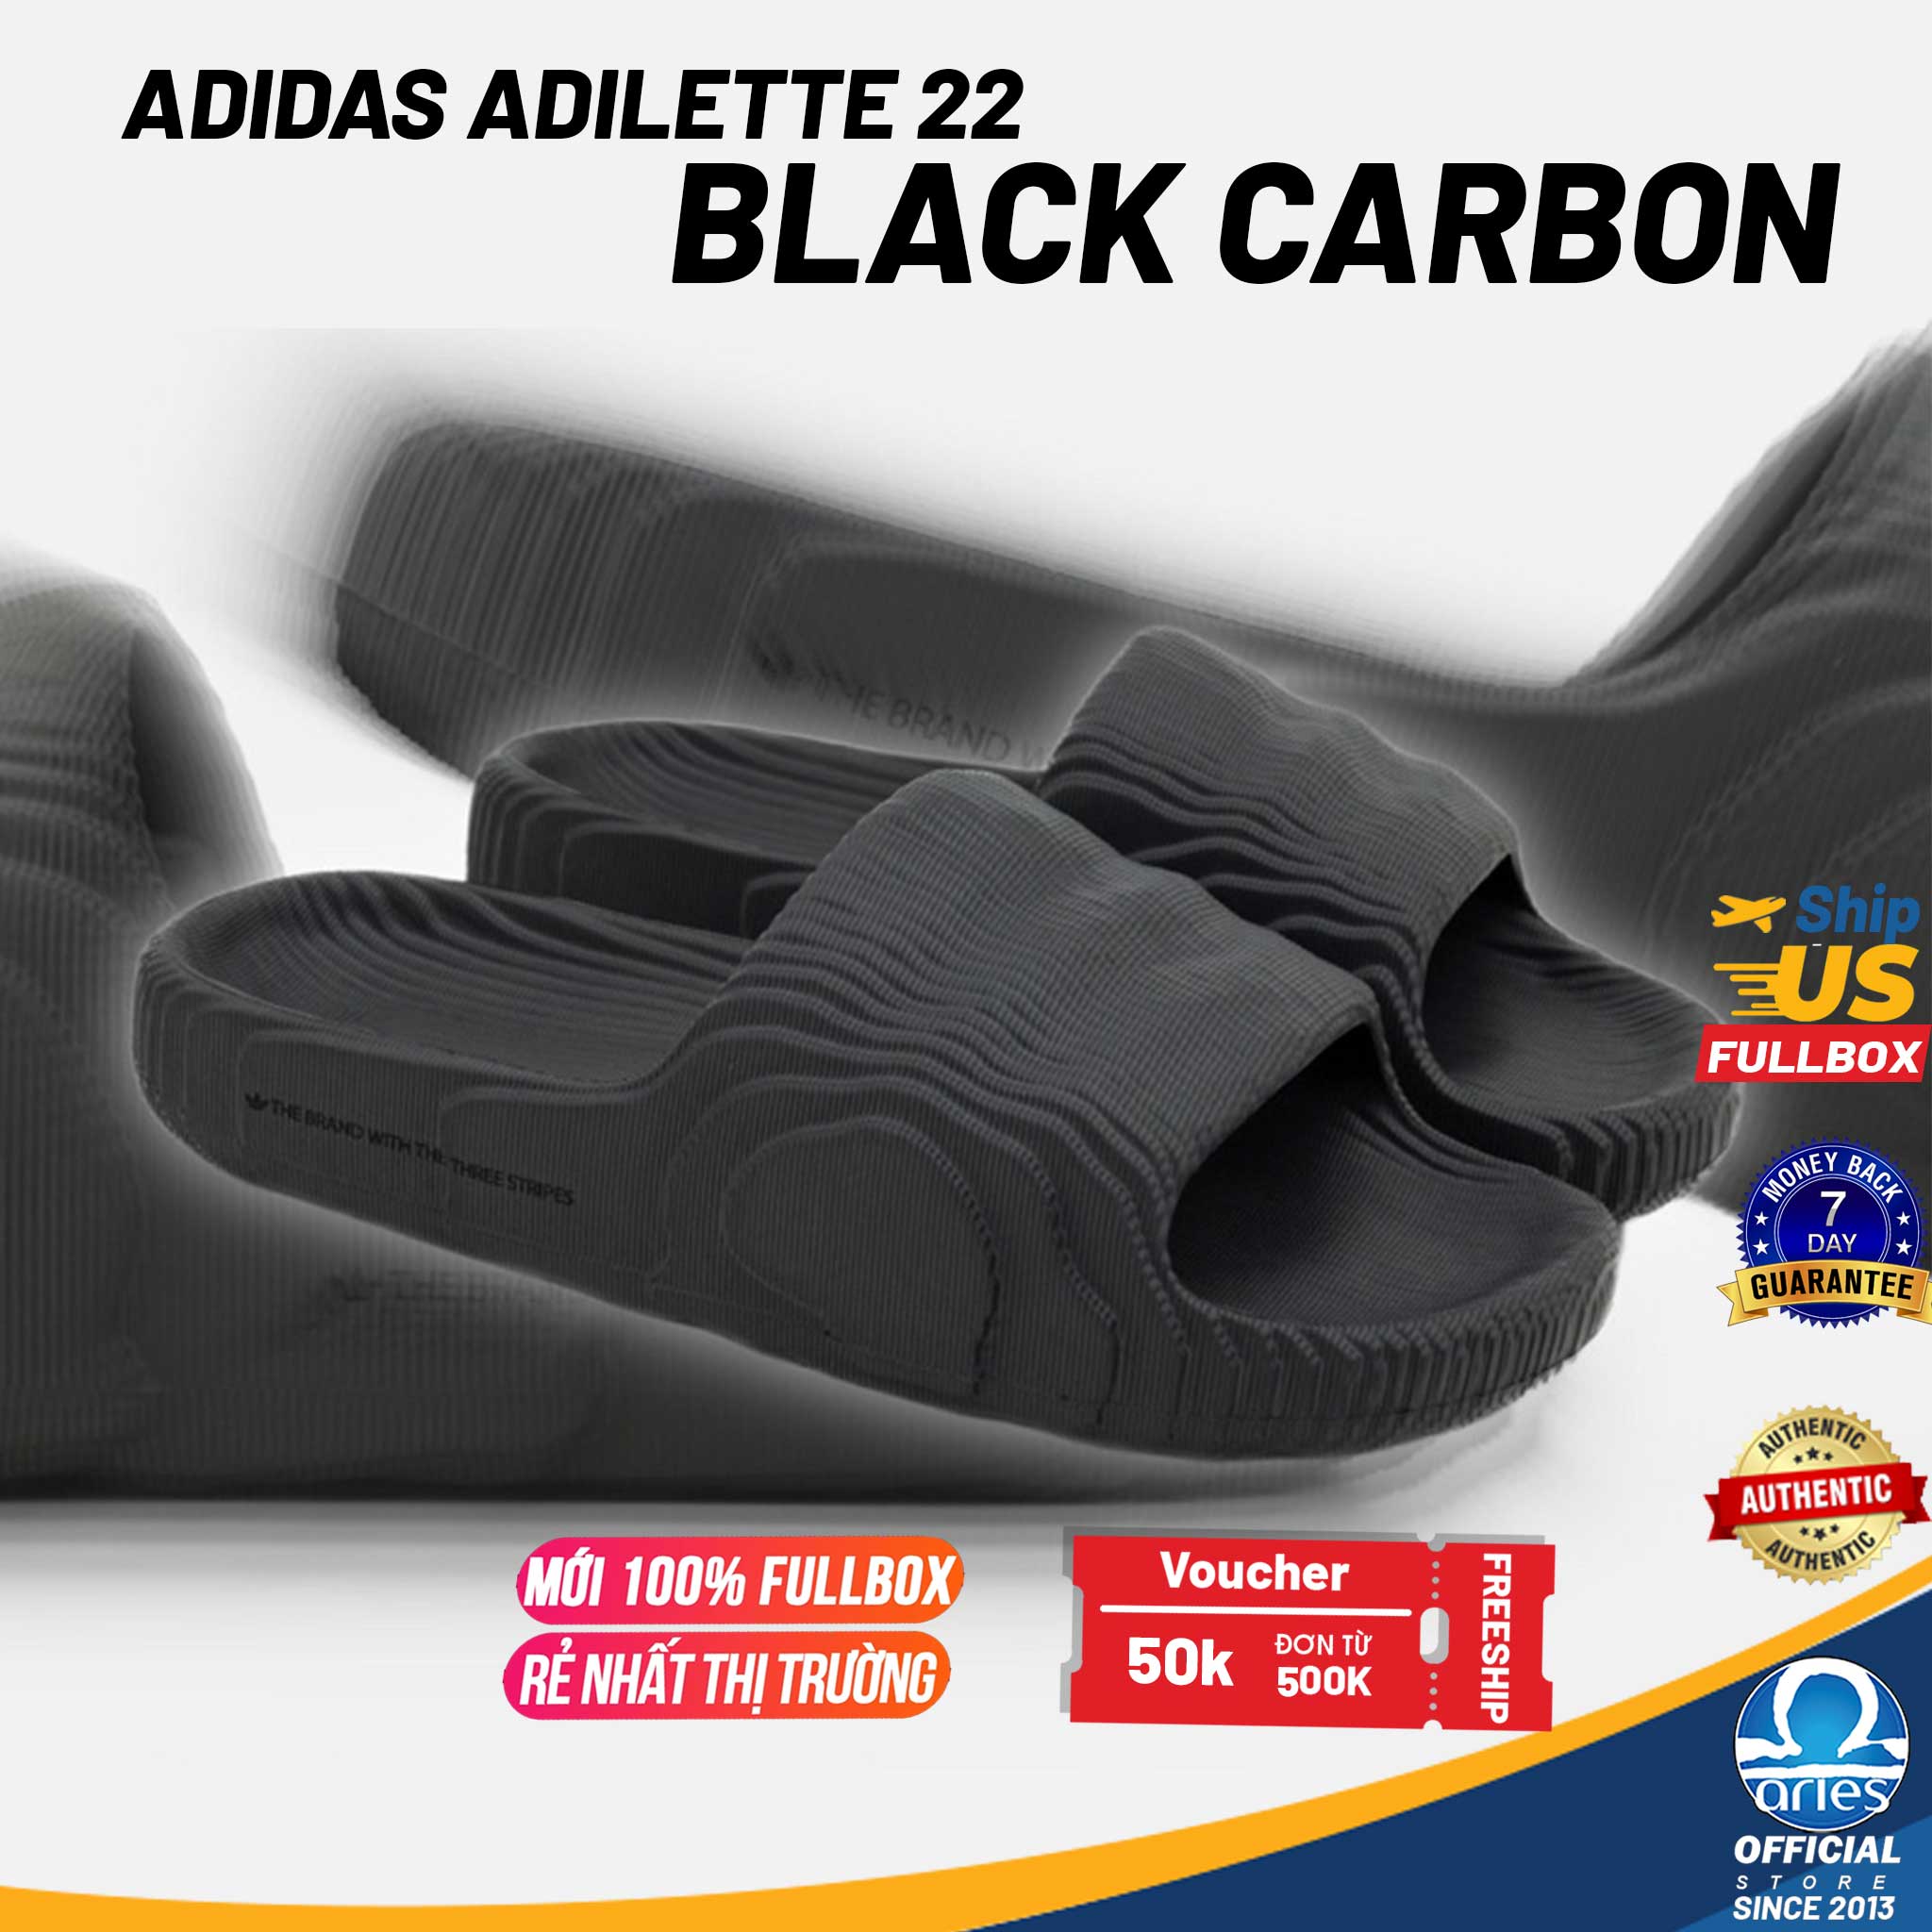 Adidas Adilette 22 Slides